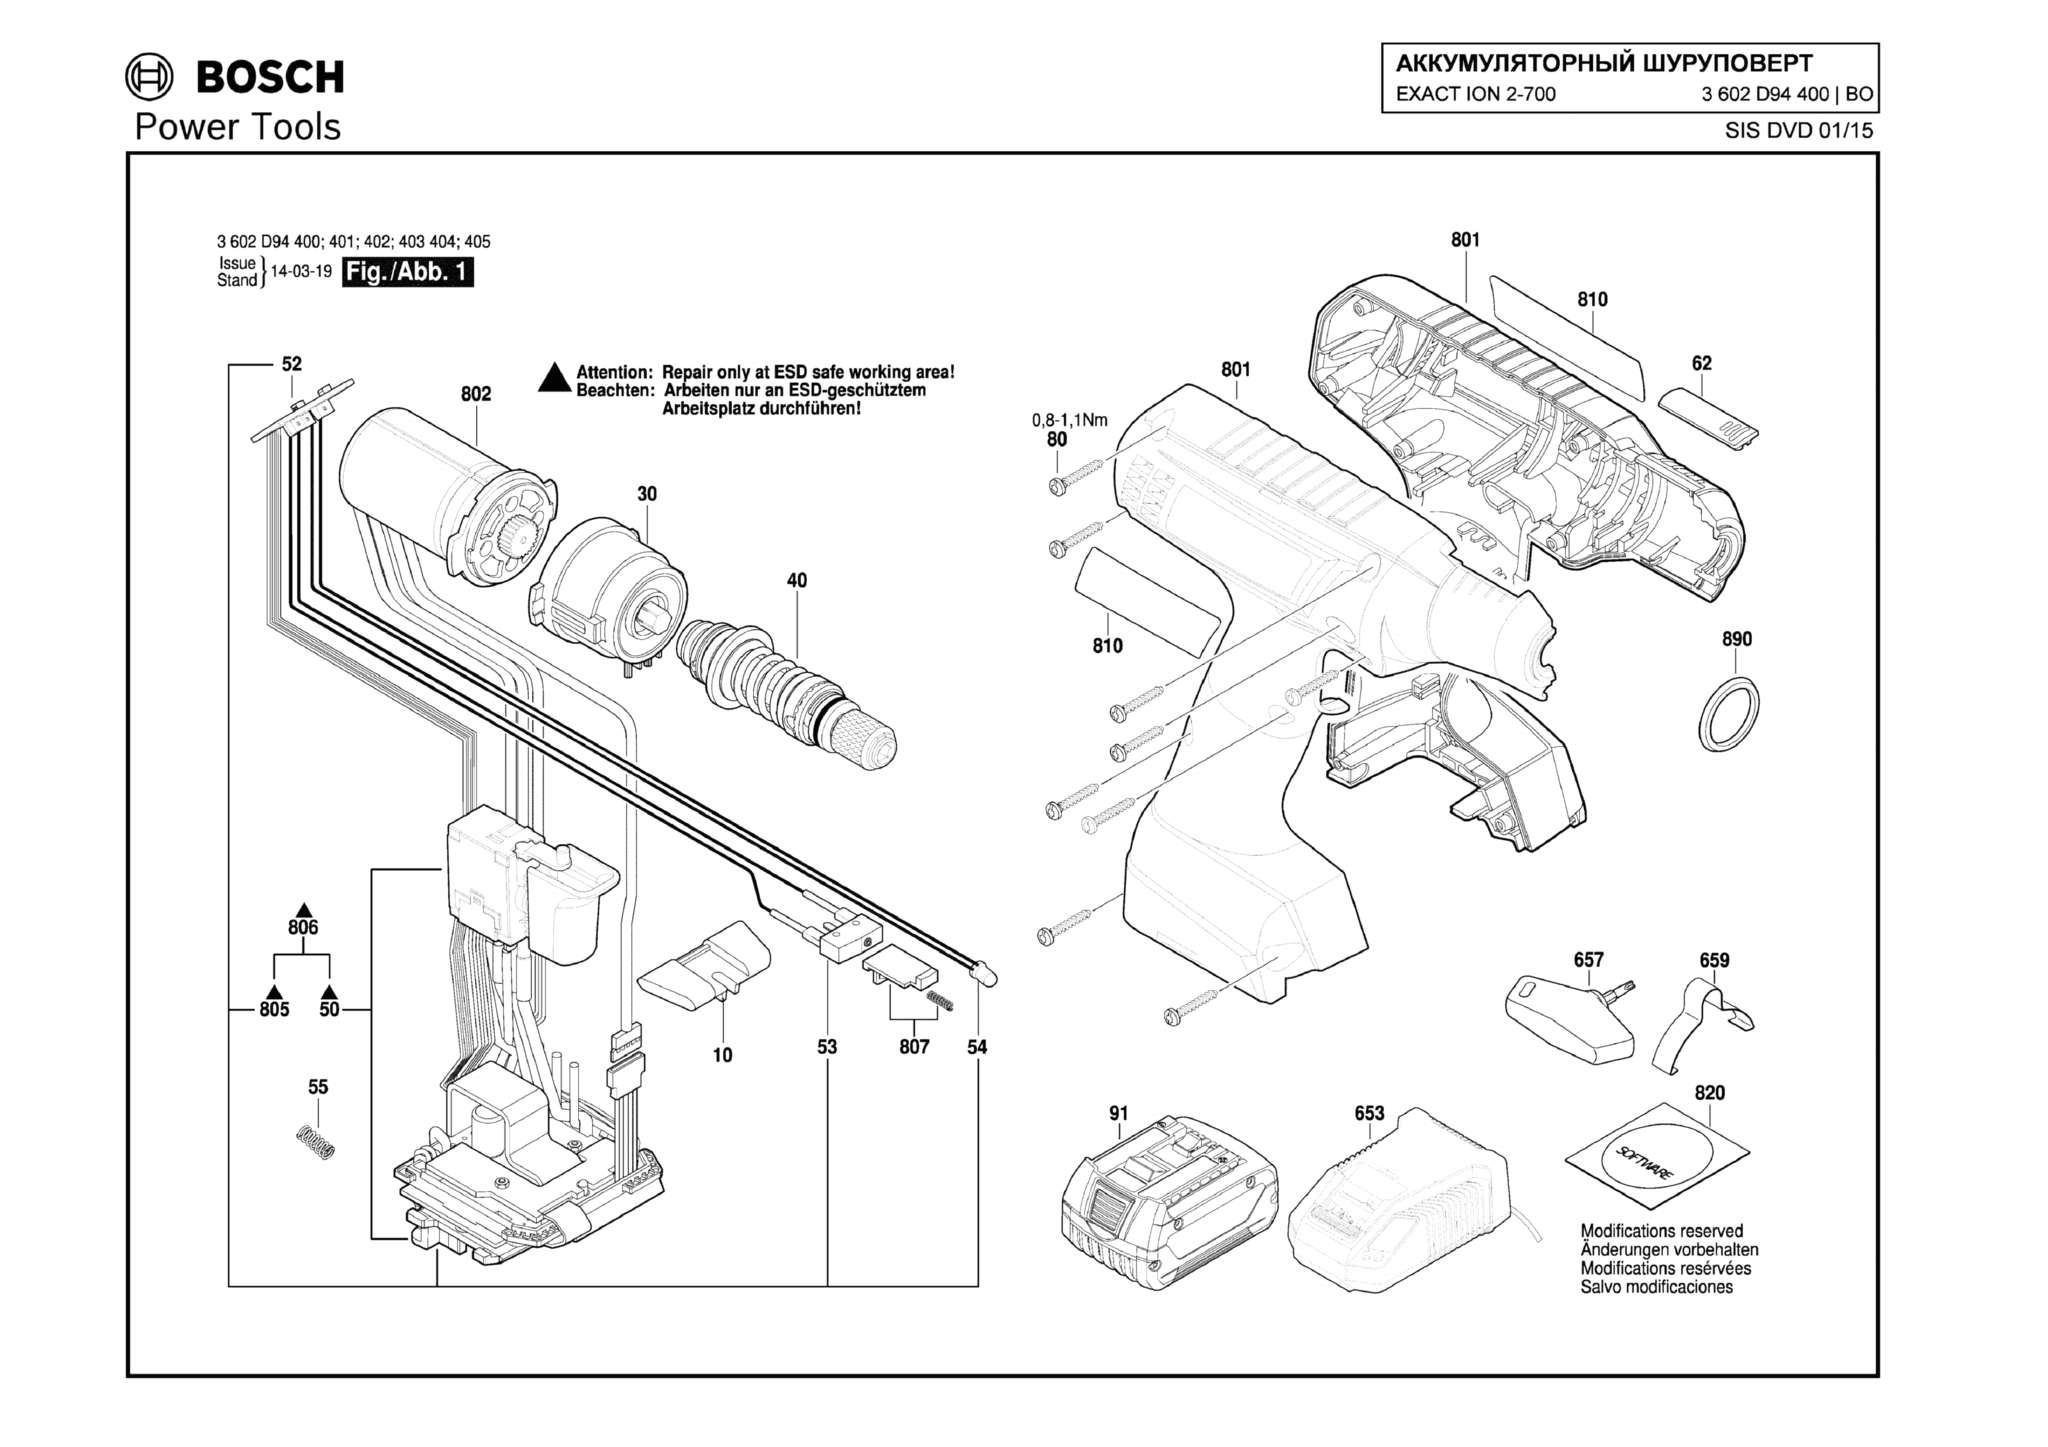 Запчасти, схема и деталировка Bosch EXACT ION 2-700 (ТИП 3602D94400)